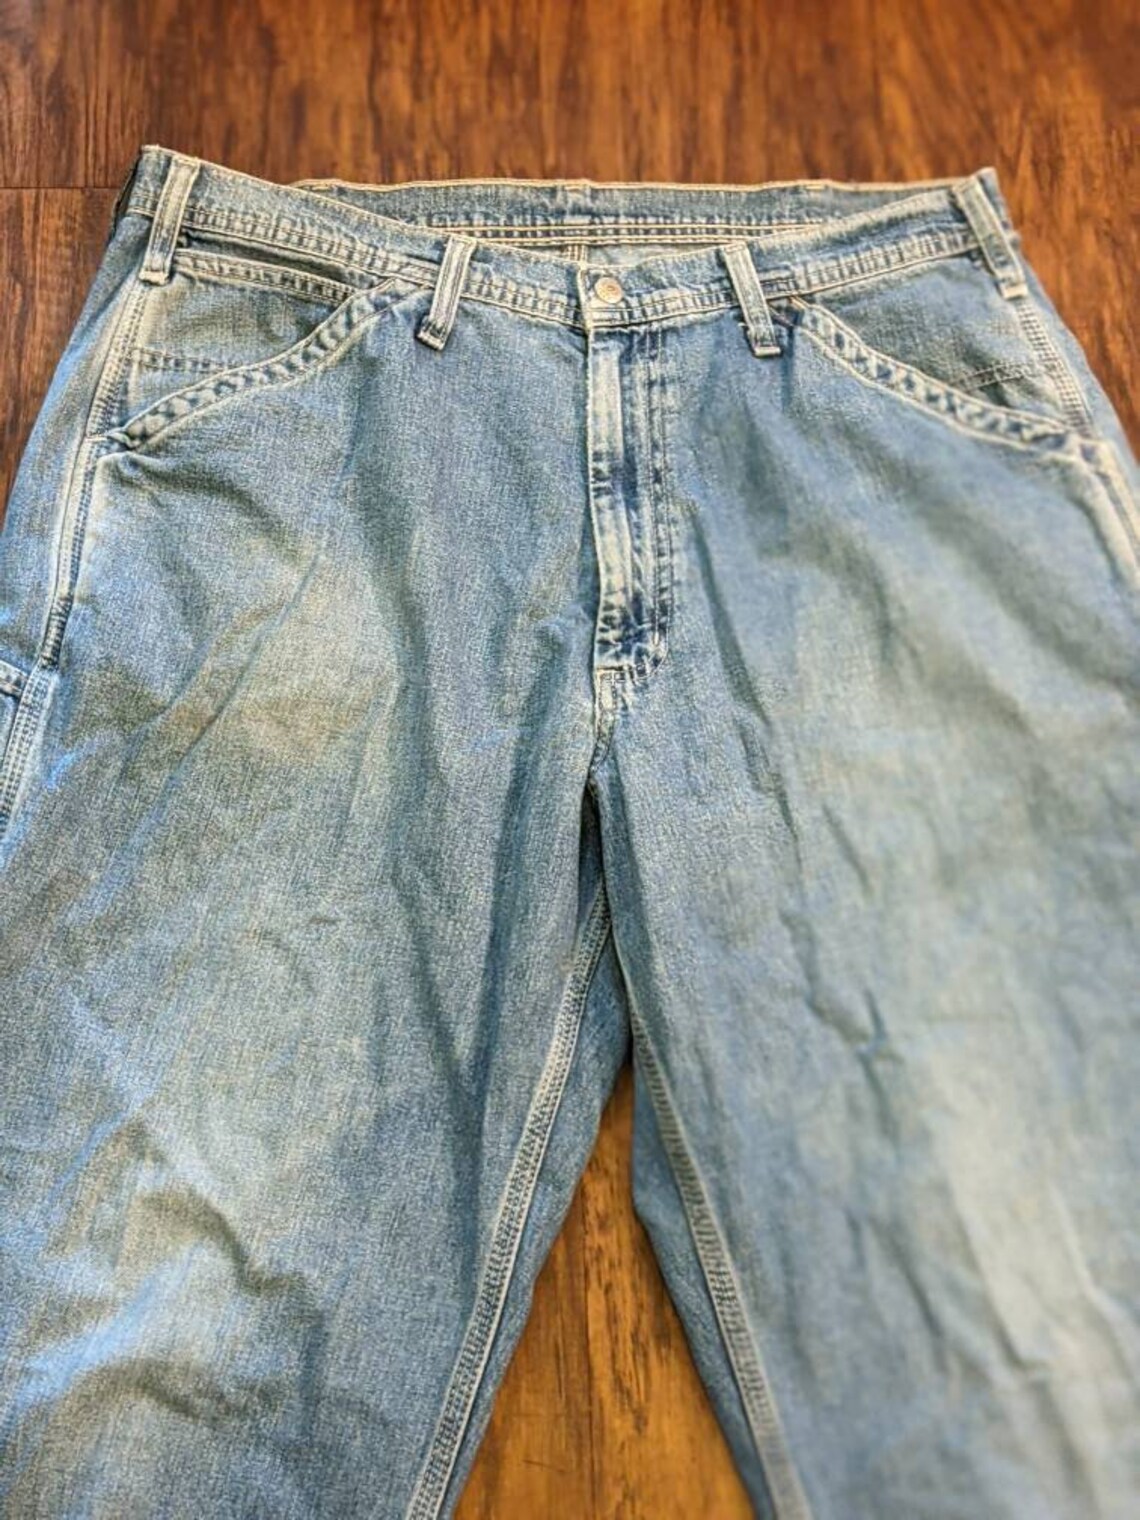 Polo Ralph Lauren Carpenter Jeans 1990s Vintage | Etsy